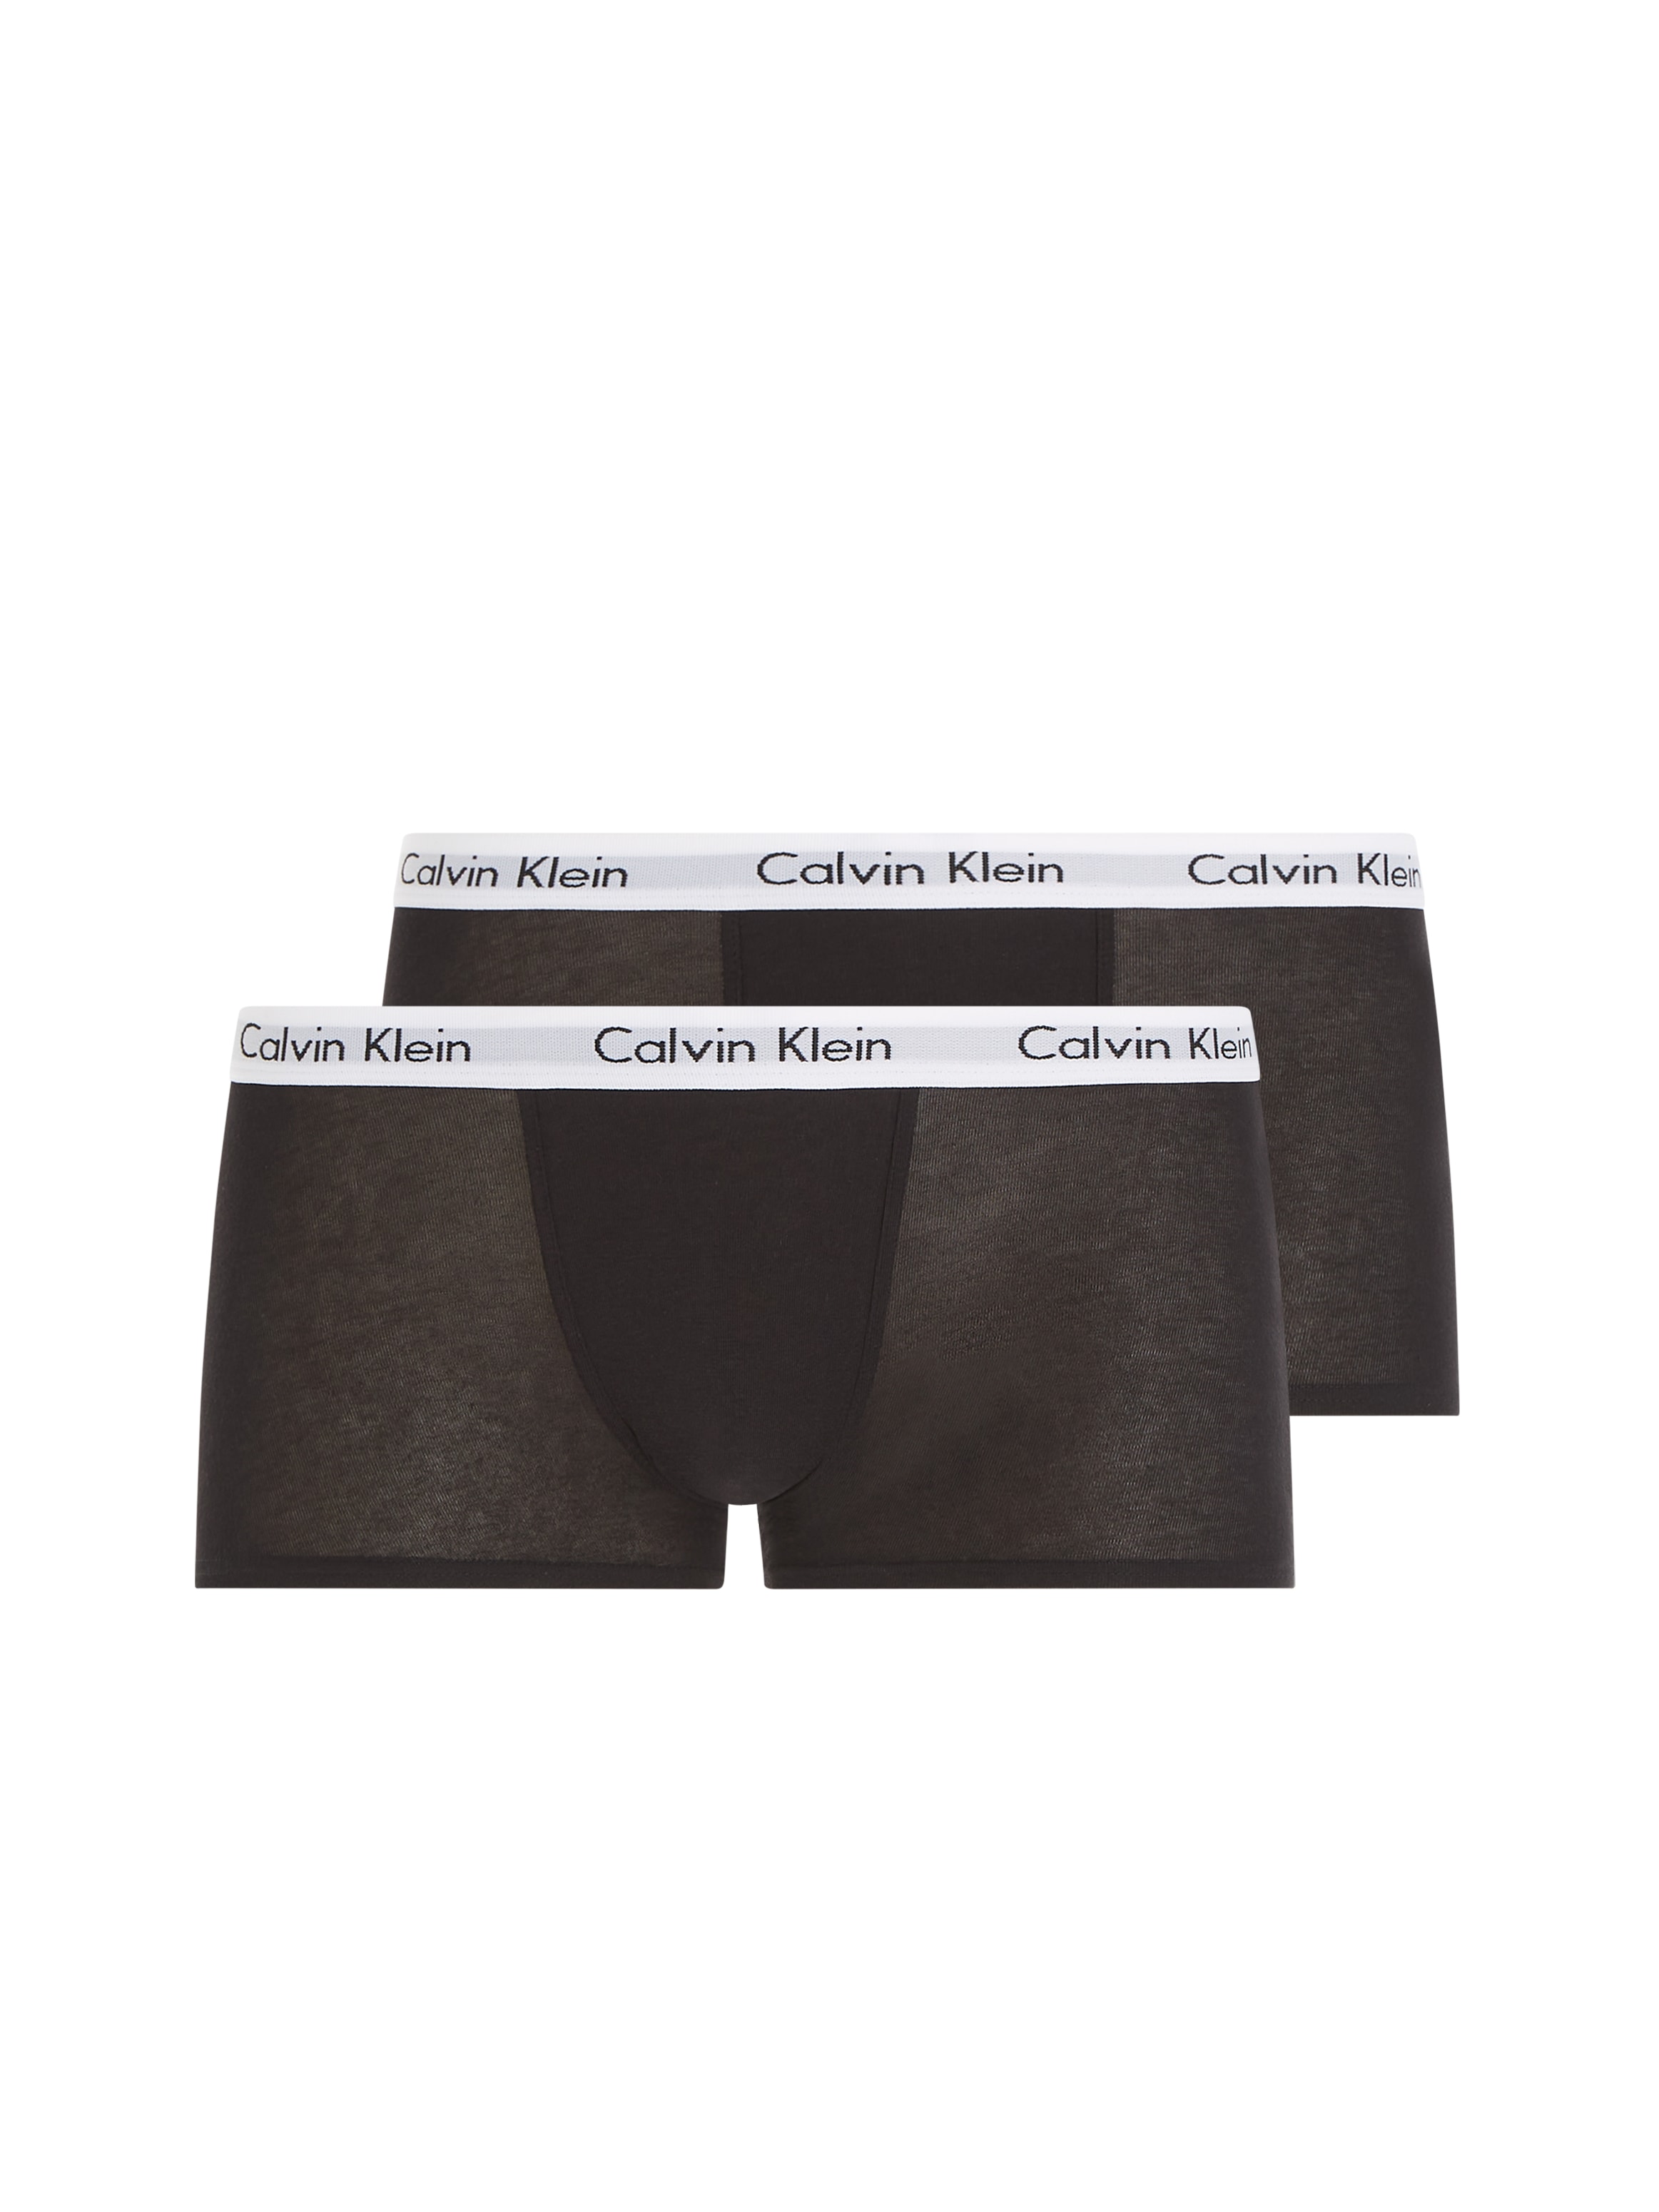 mit BAUR | CK auf 2 (Packung, online Logo Calvin Klein Boxer, bestellen St.), Bund dem